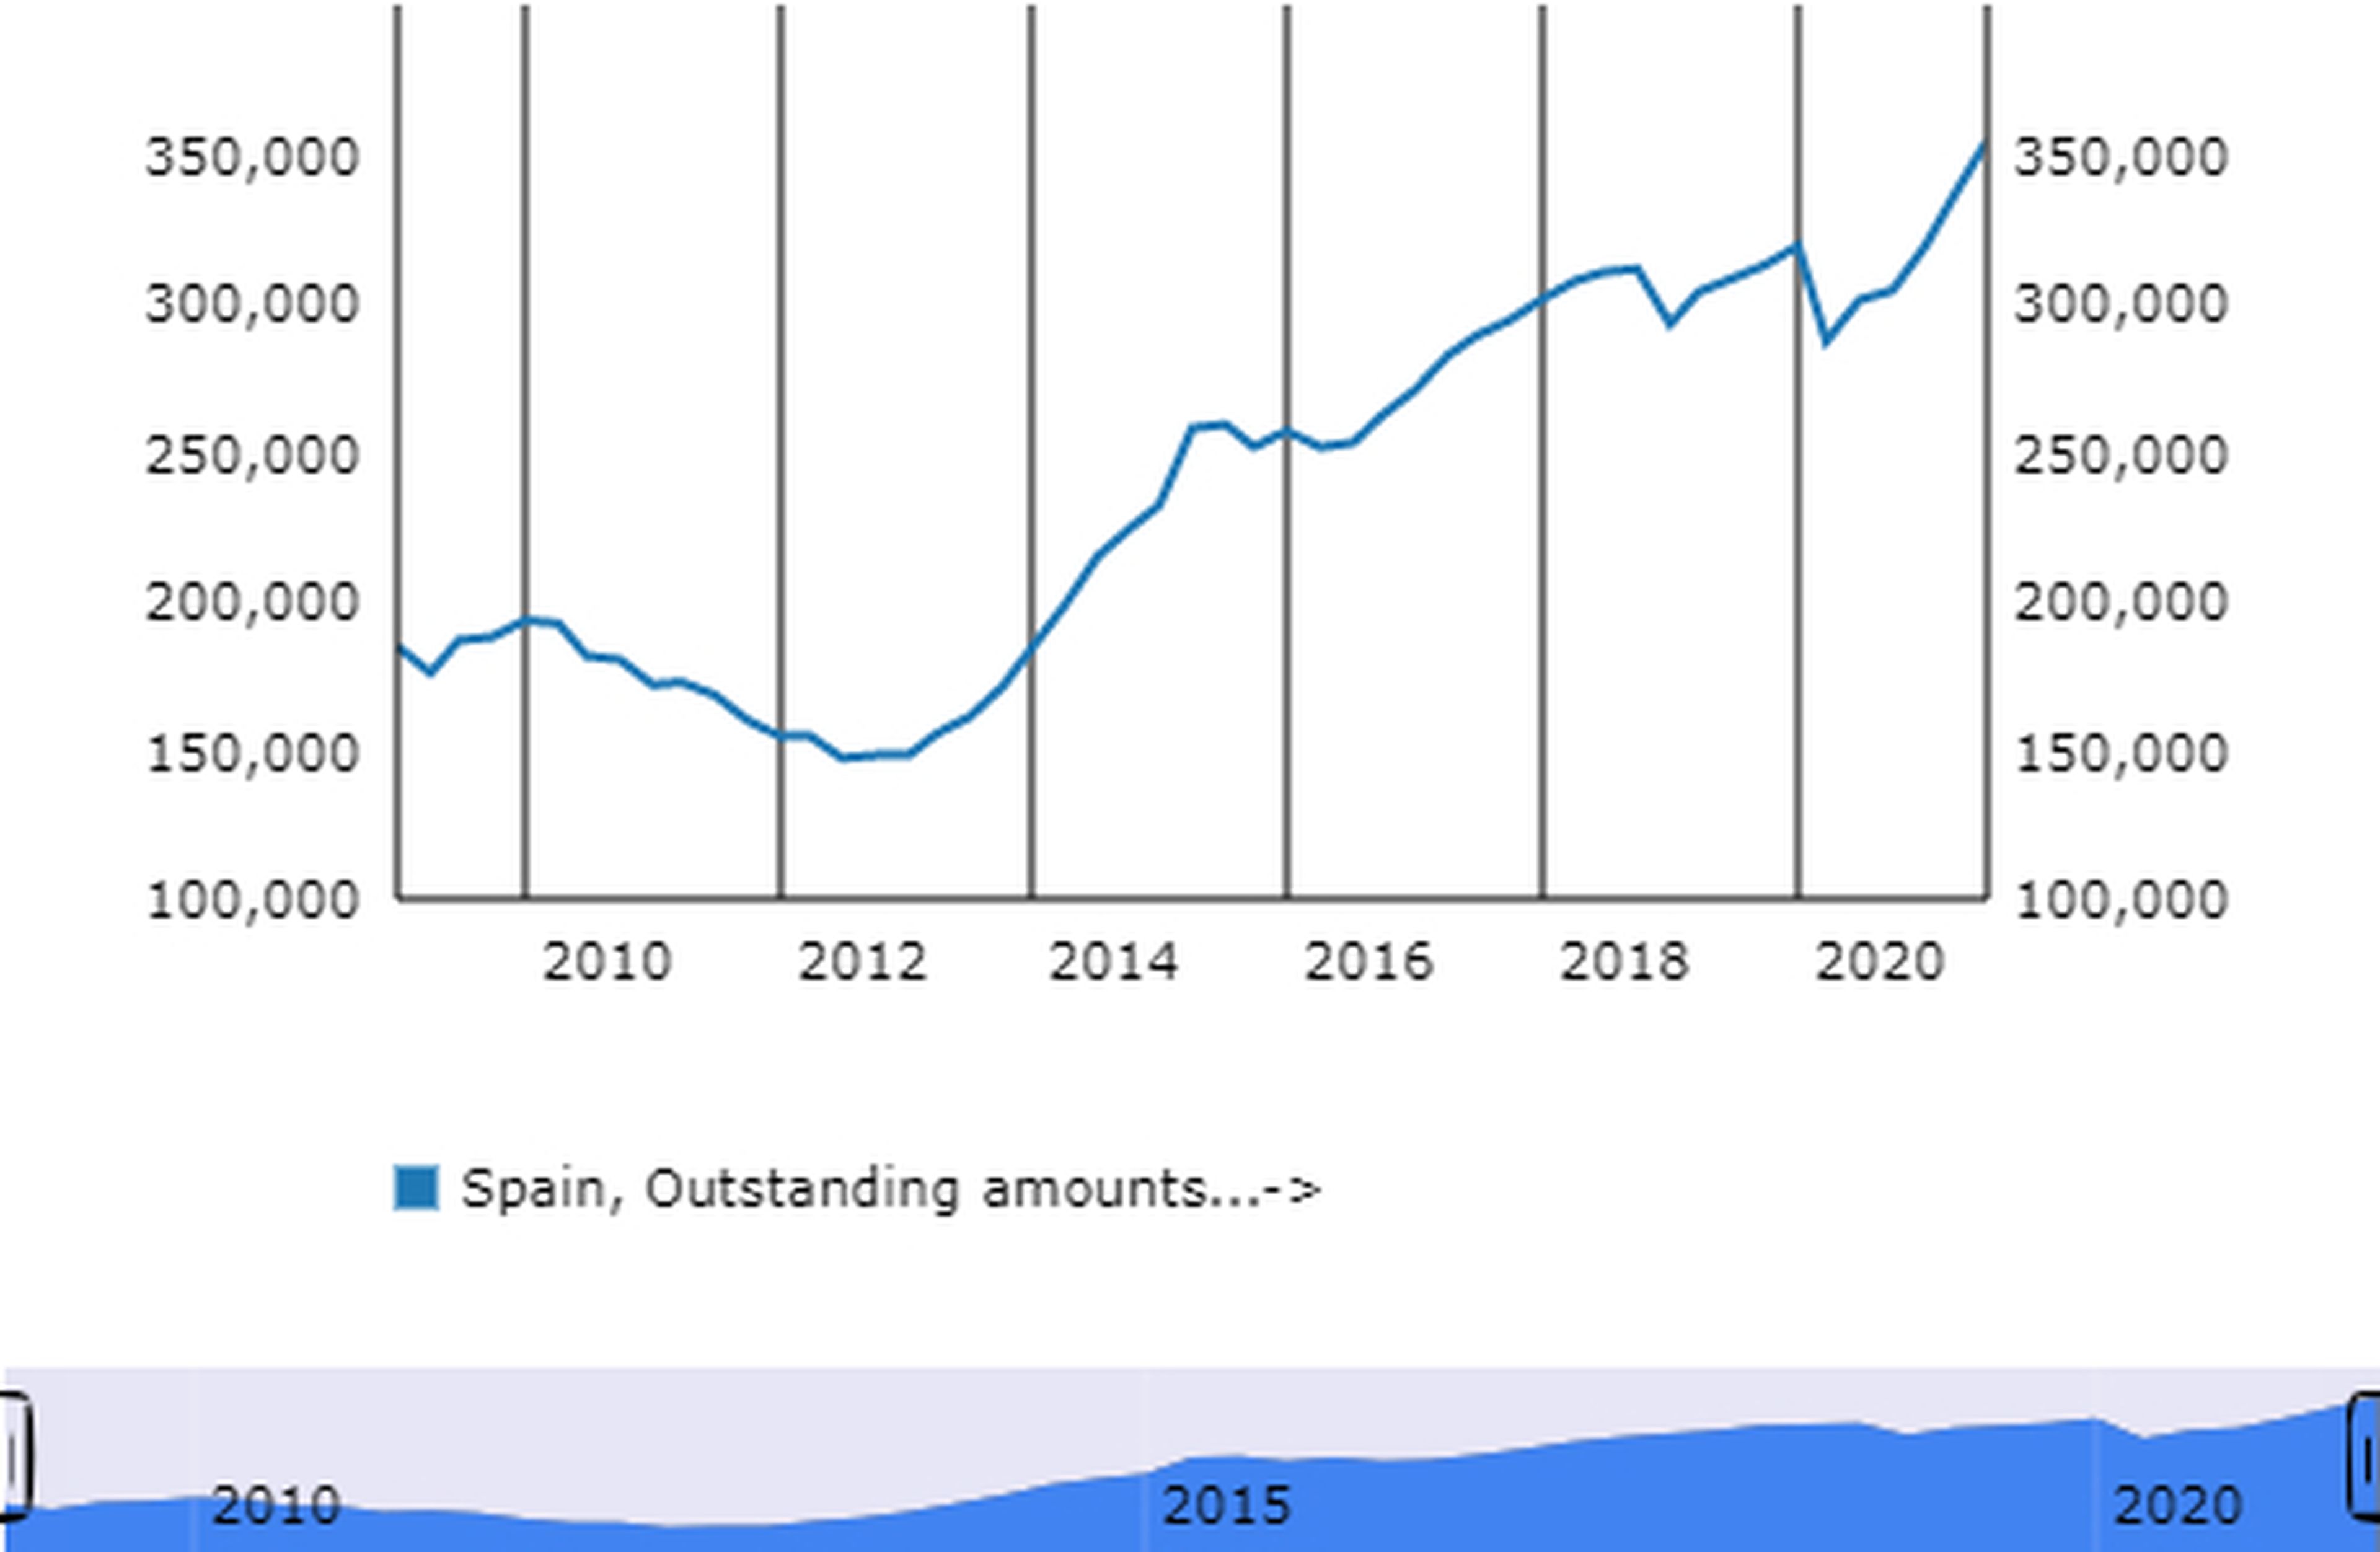 Evolución de los activos en fondos de inversión en España entre 2008 y 2021. Datos en millones de euros.